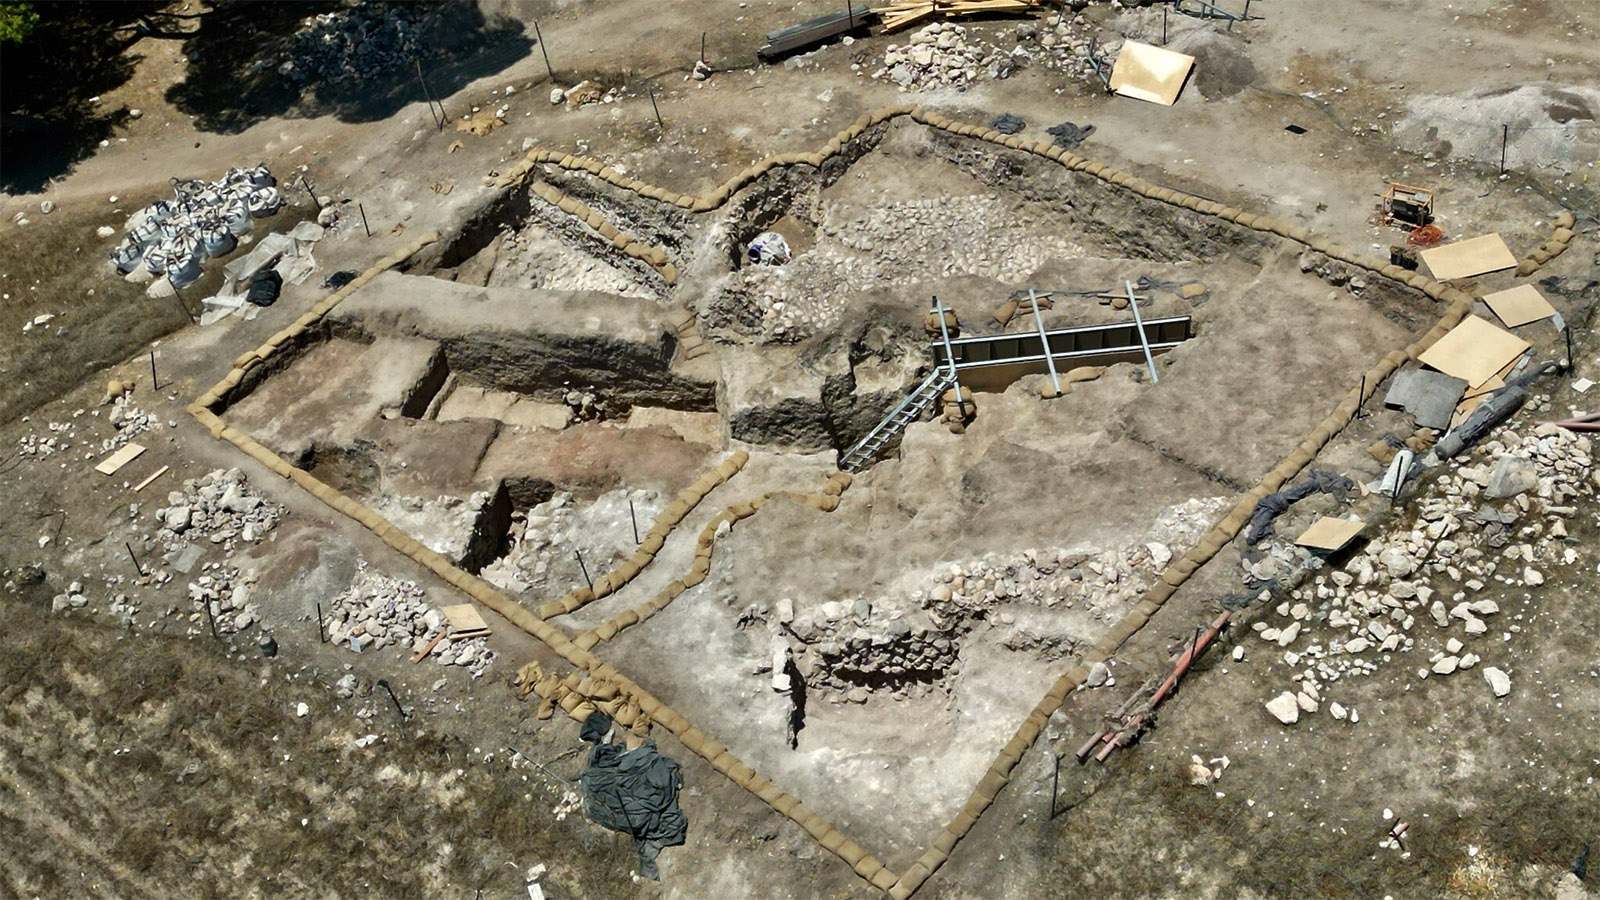 Les fouilles de Tel Shimron révèlent une merveille architecturale vieille de 3,800 1 ans, un passage caché en Israël XNUMX